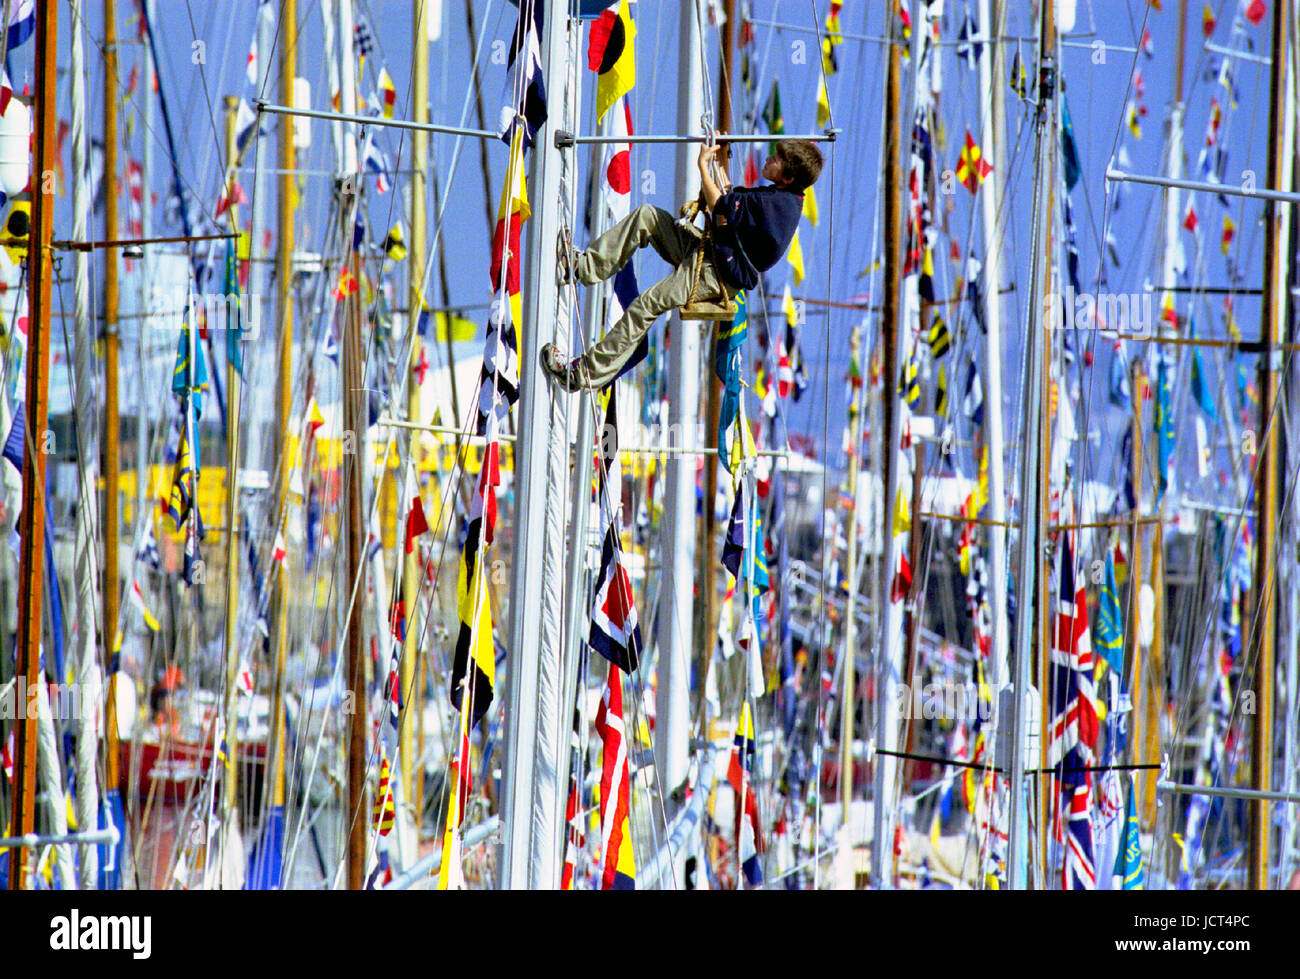 Il Festival internazionale del mare che coinvolge 1000 barche, era detenuto Portsmouth Naval Dockyard nel 2001. Un ragazzo in un bosun la sedia si arrampica su un montante. Foto Stock